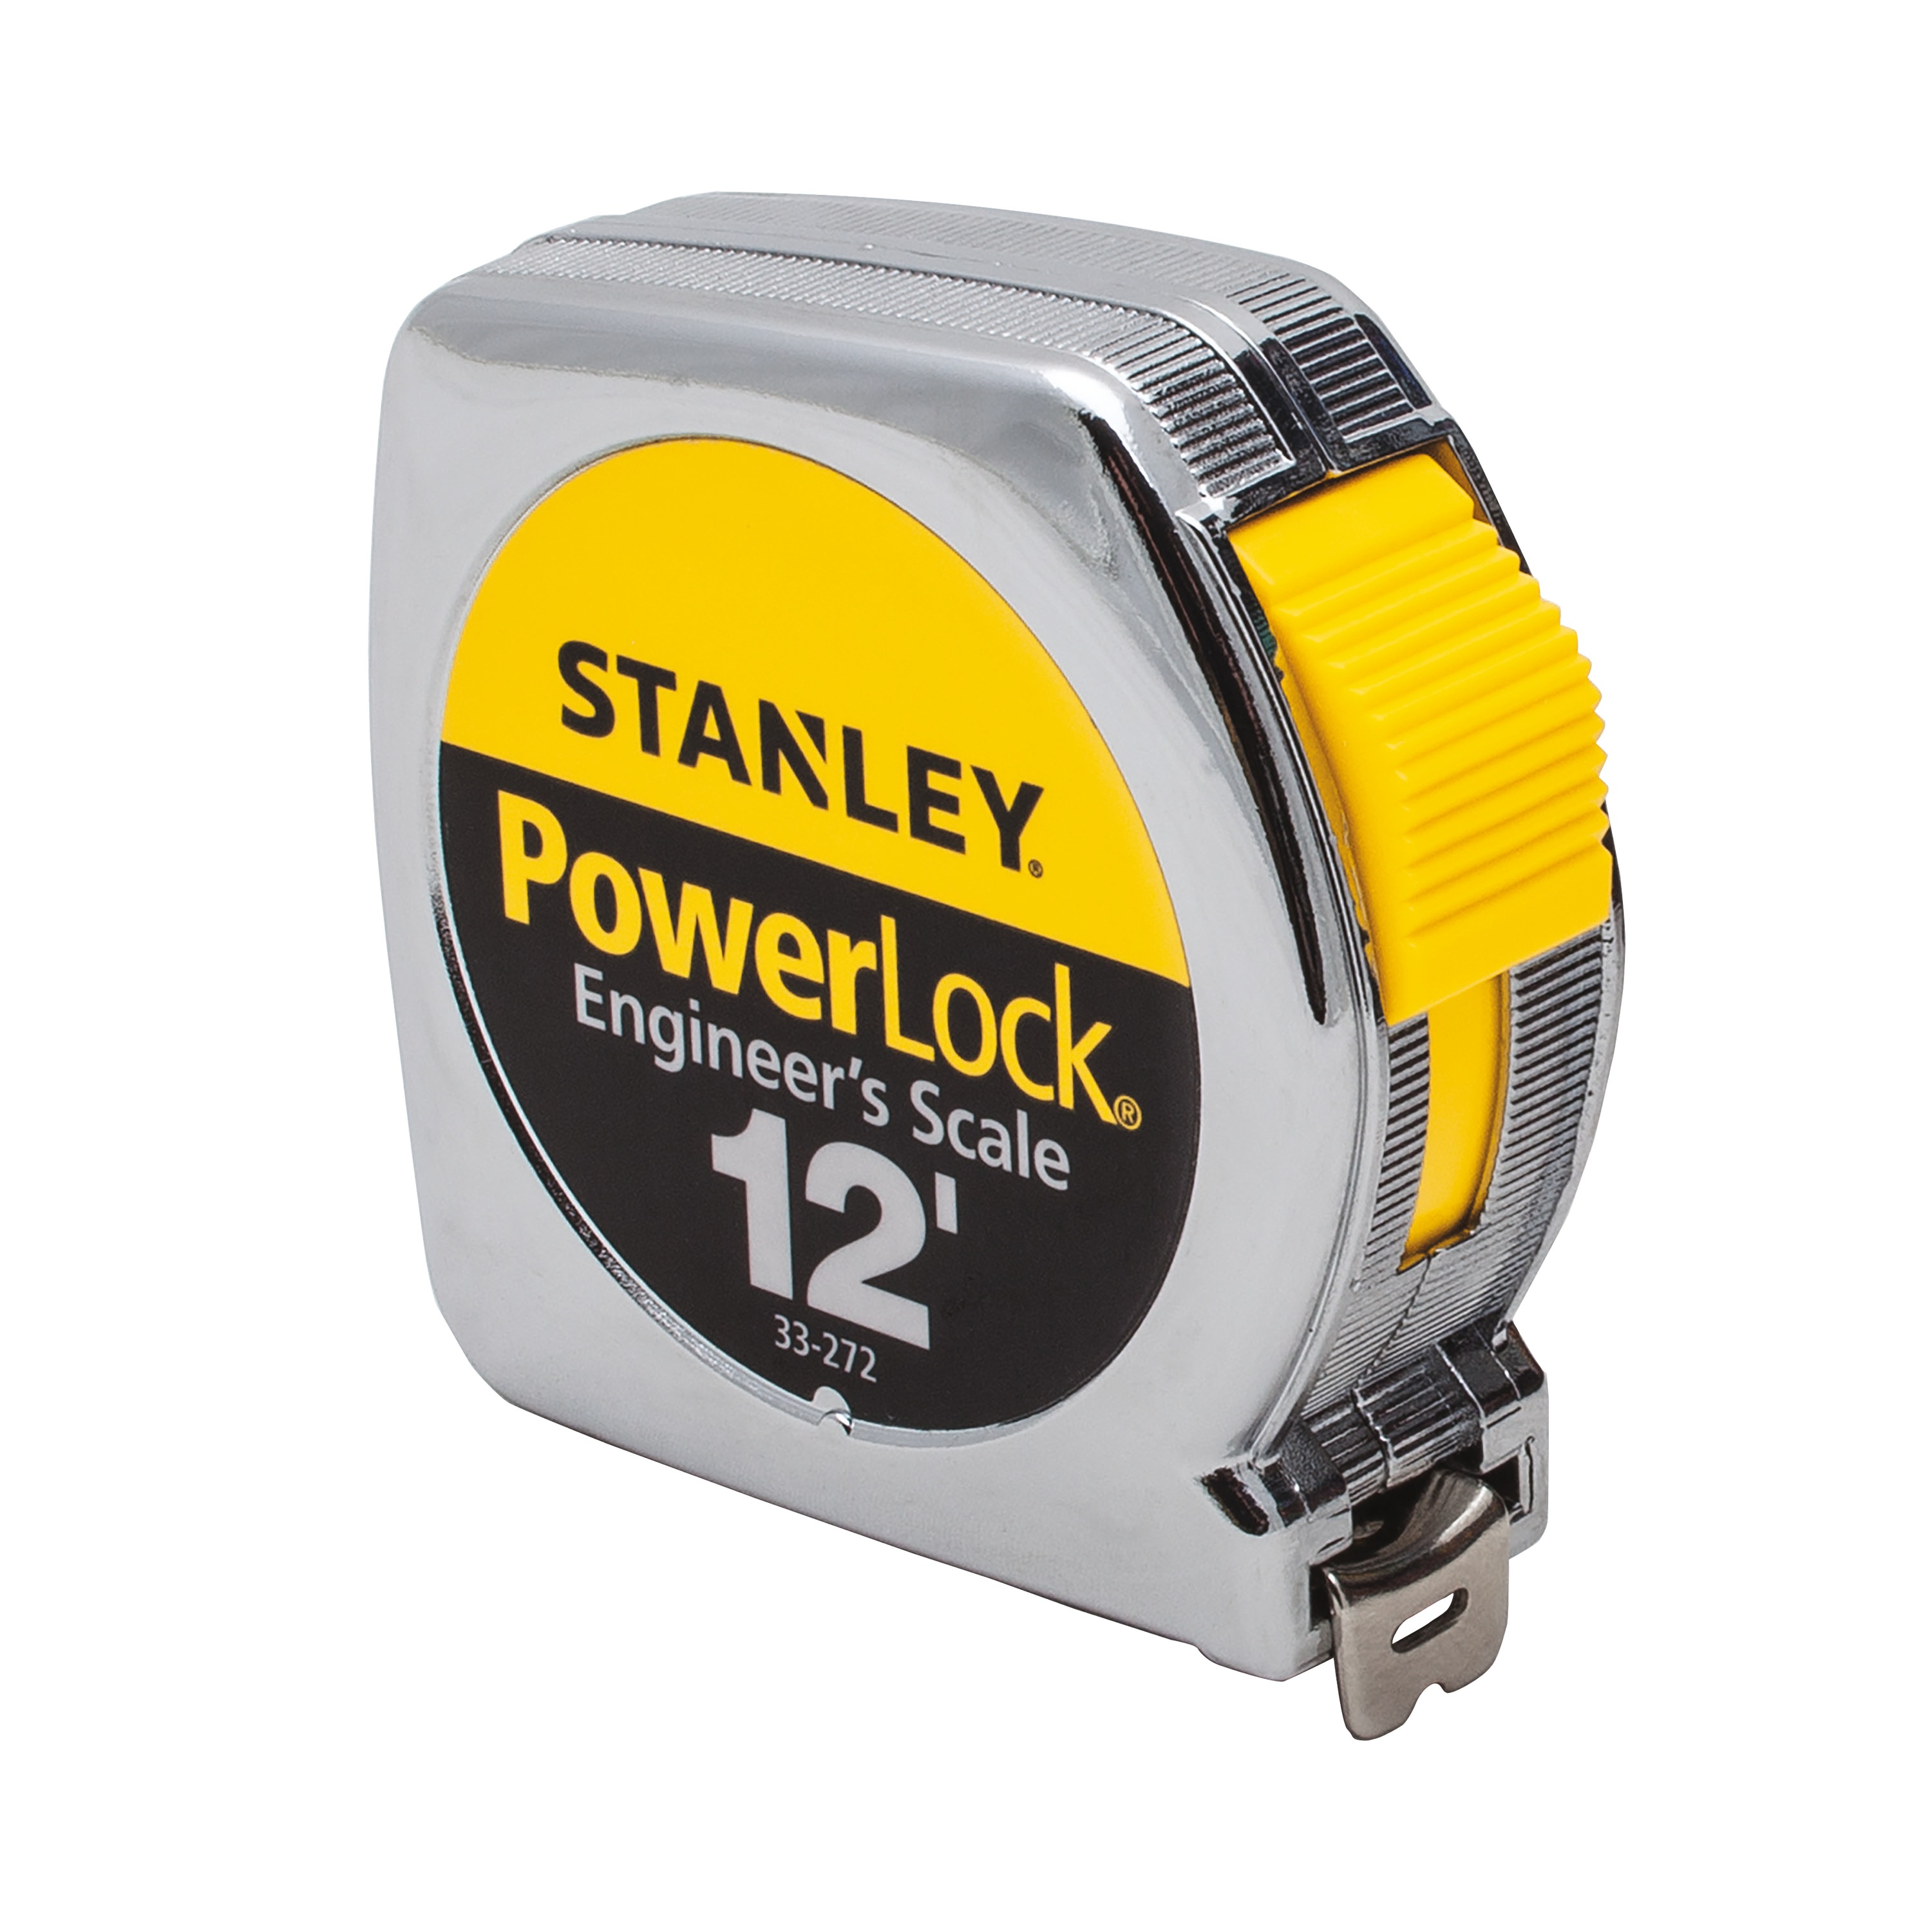 Stanley Tools - 12 ft Powerlock Tape Measure - 33-272